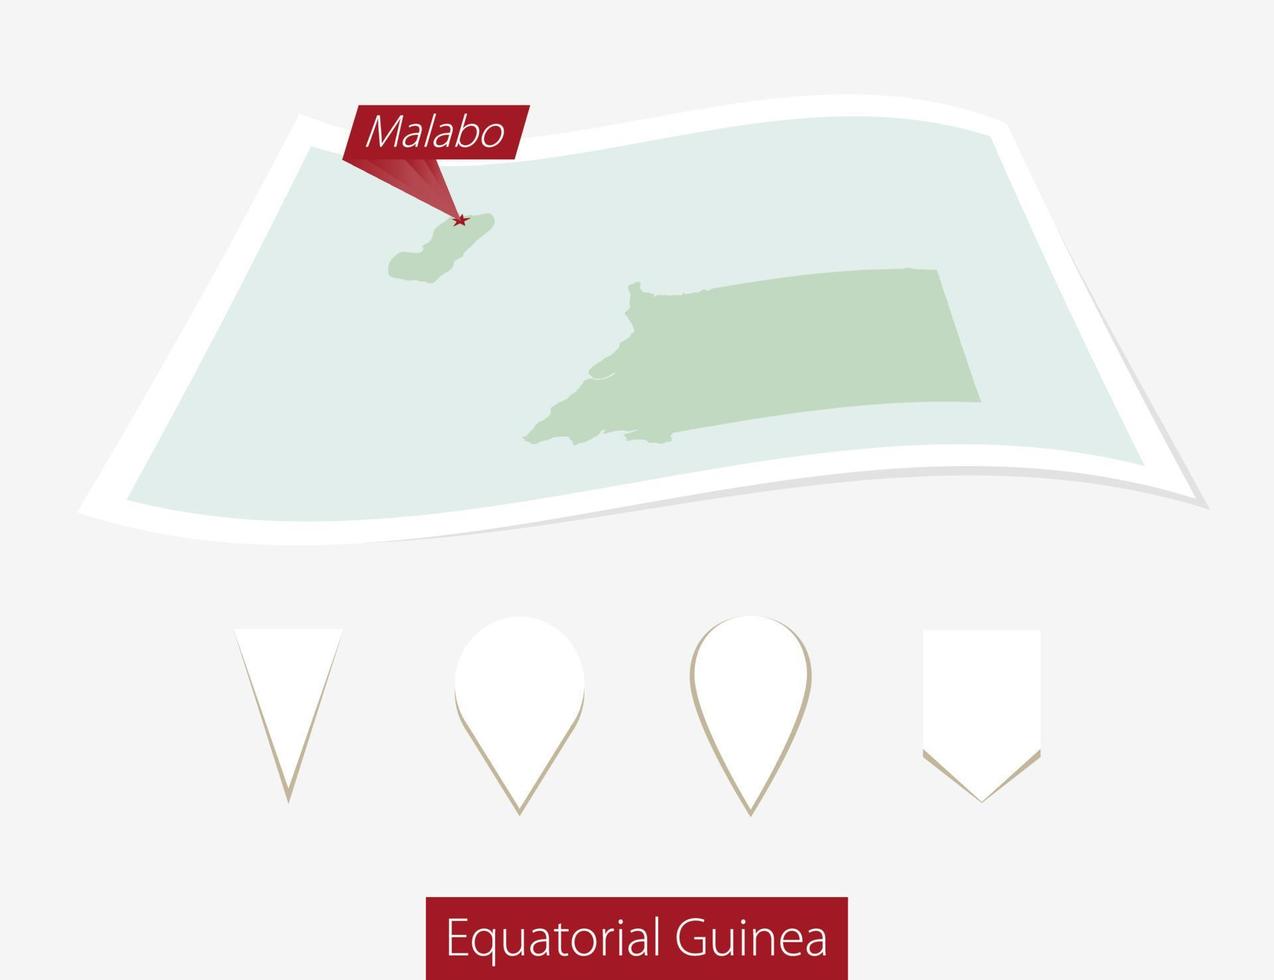 gebogen Papier Karte von äquatorial Guinea mit Hauptstadt malabo auf grau Hintergrund. vier anders Karte Stift Satz. vektor